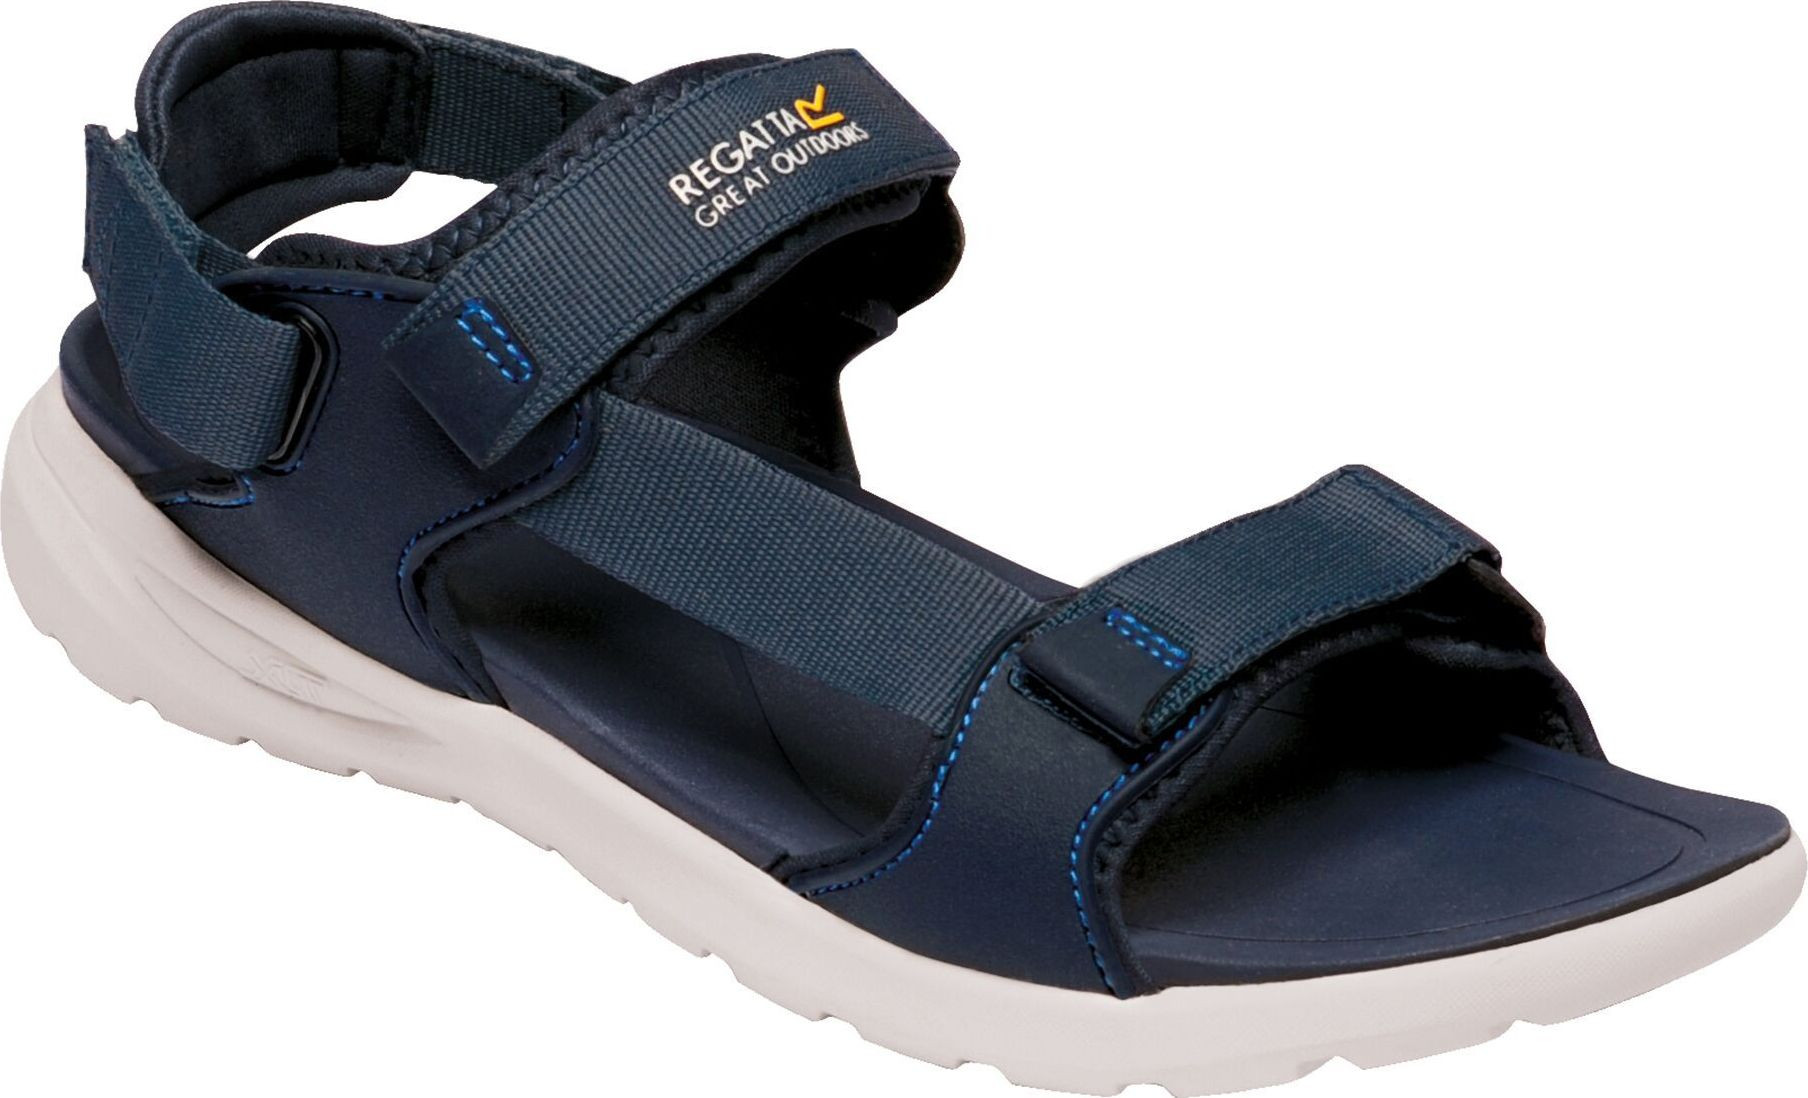 Pánské sandály REGATTA RMF658-5PM tmavě modré tmavě modré 41